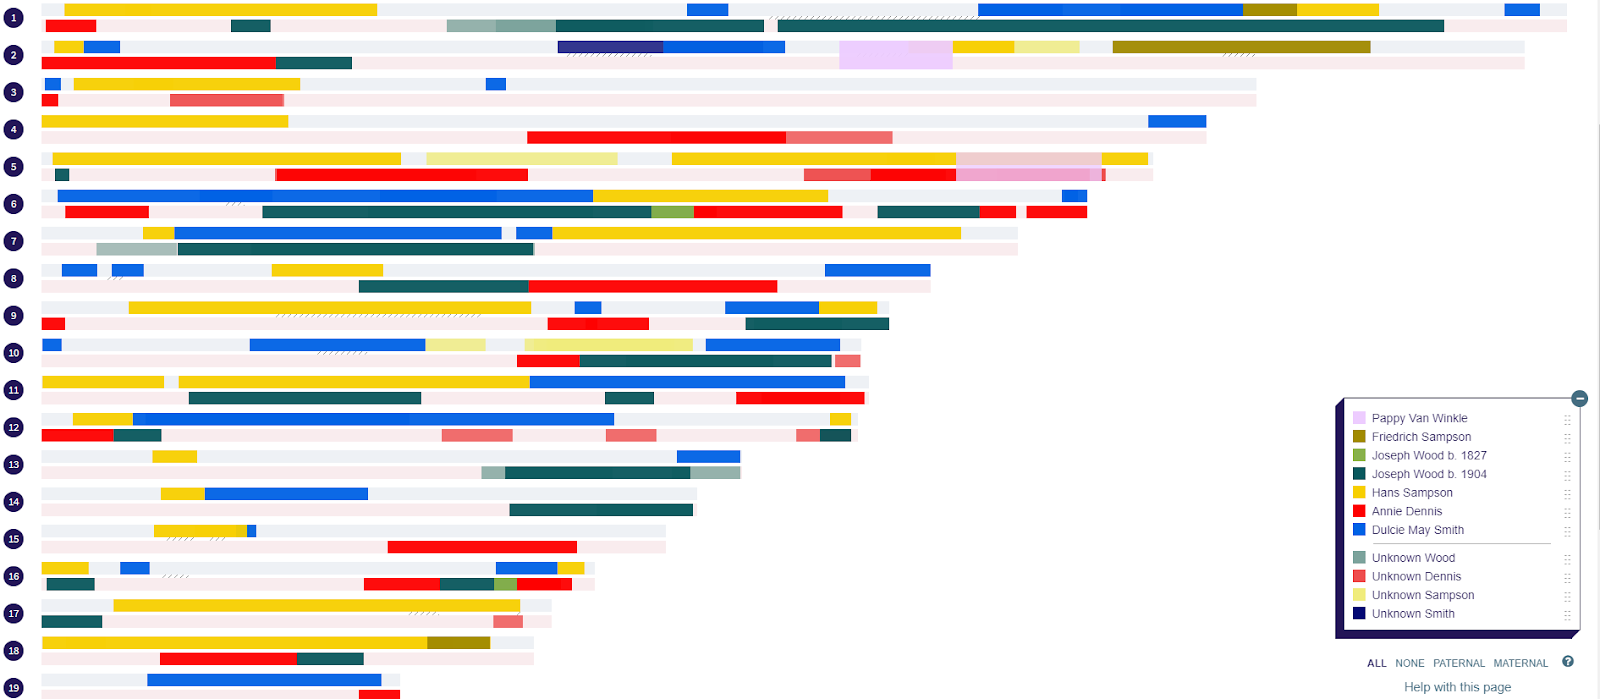 Um exemplo de perfil de cromossomo mostrando segmentos correspondentes que se acredita serem de diferentes ancestrais. A legenda à direita mostra as origens ancestrais definidas pelo usuário para esses segmentos. 